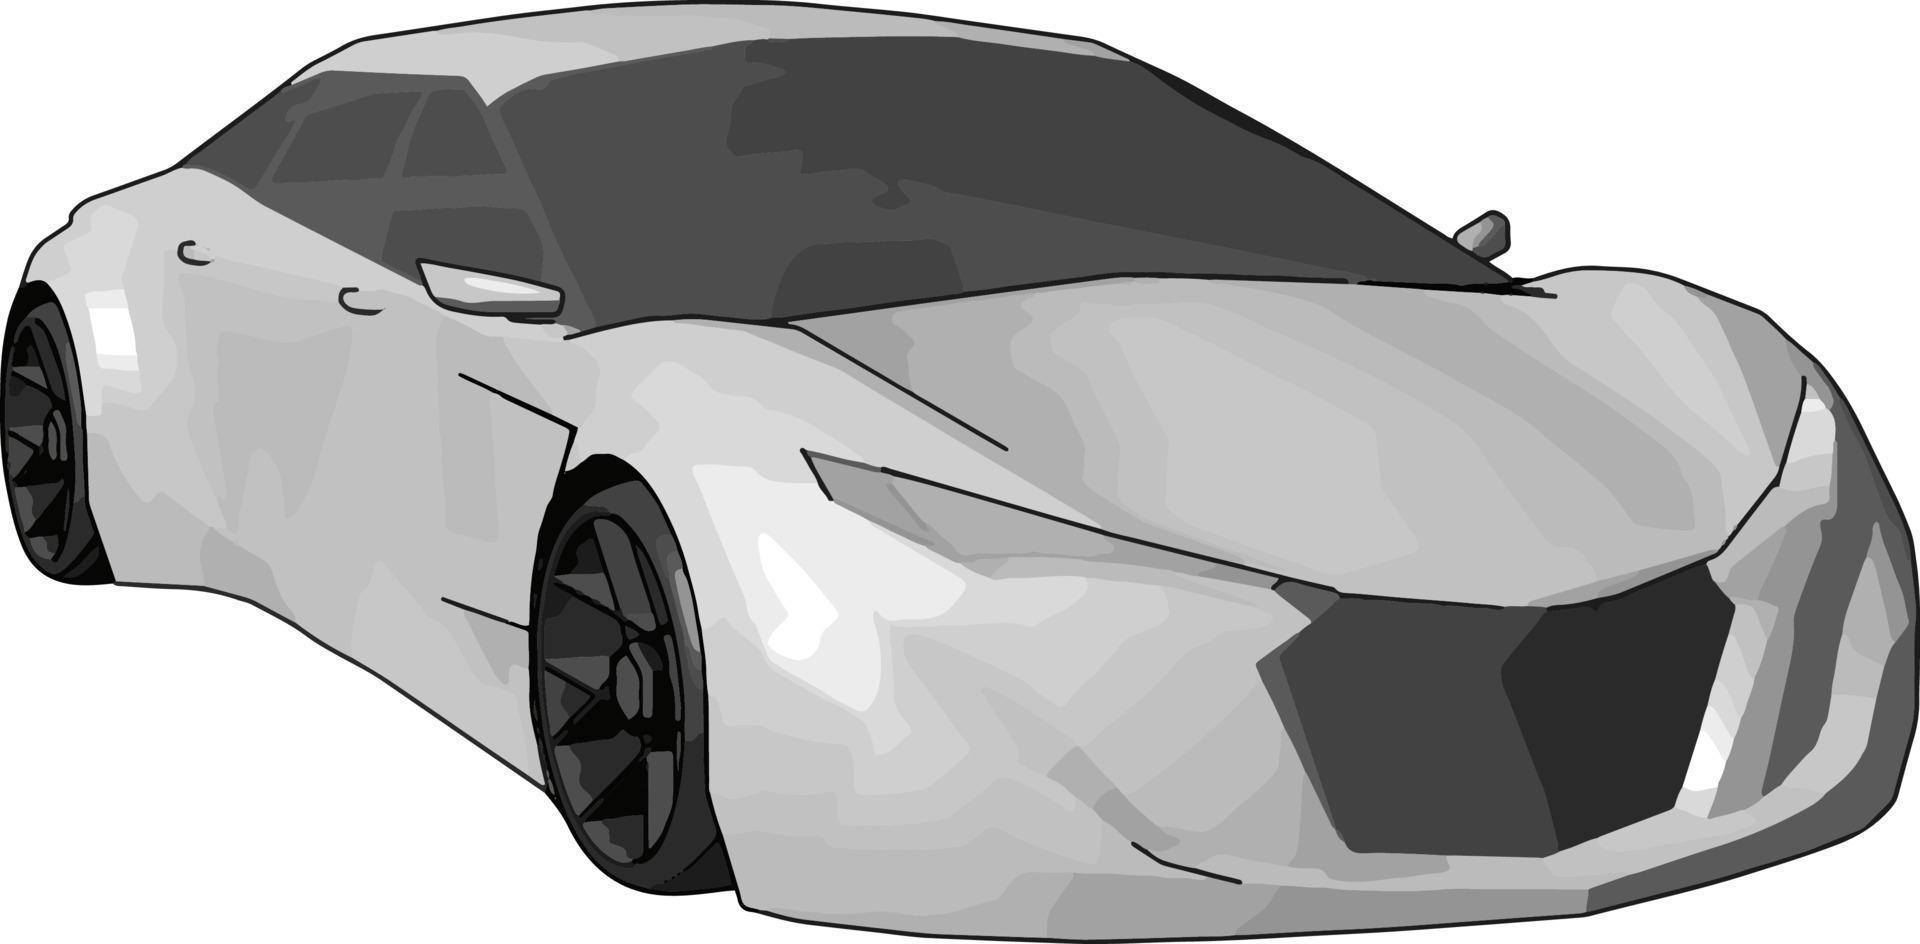 Weißer Lamborghini Gallardo, Illustration, Vektor auf weißem Hintergrund.